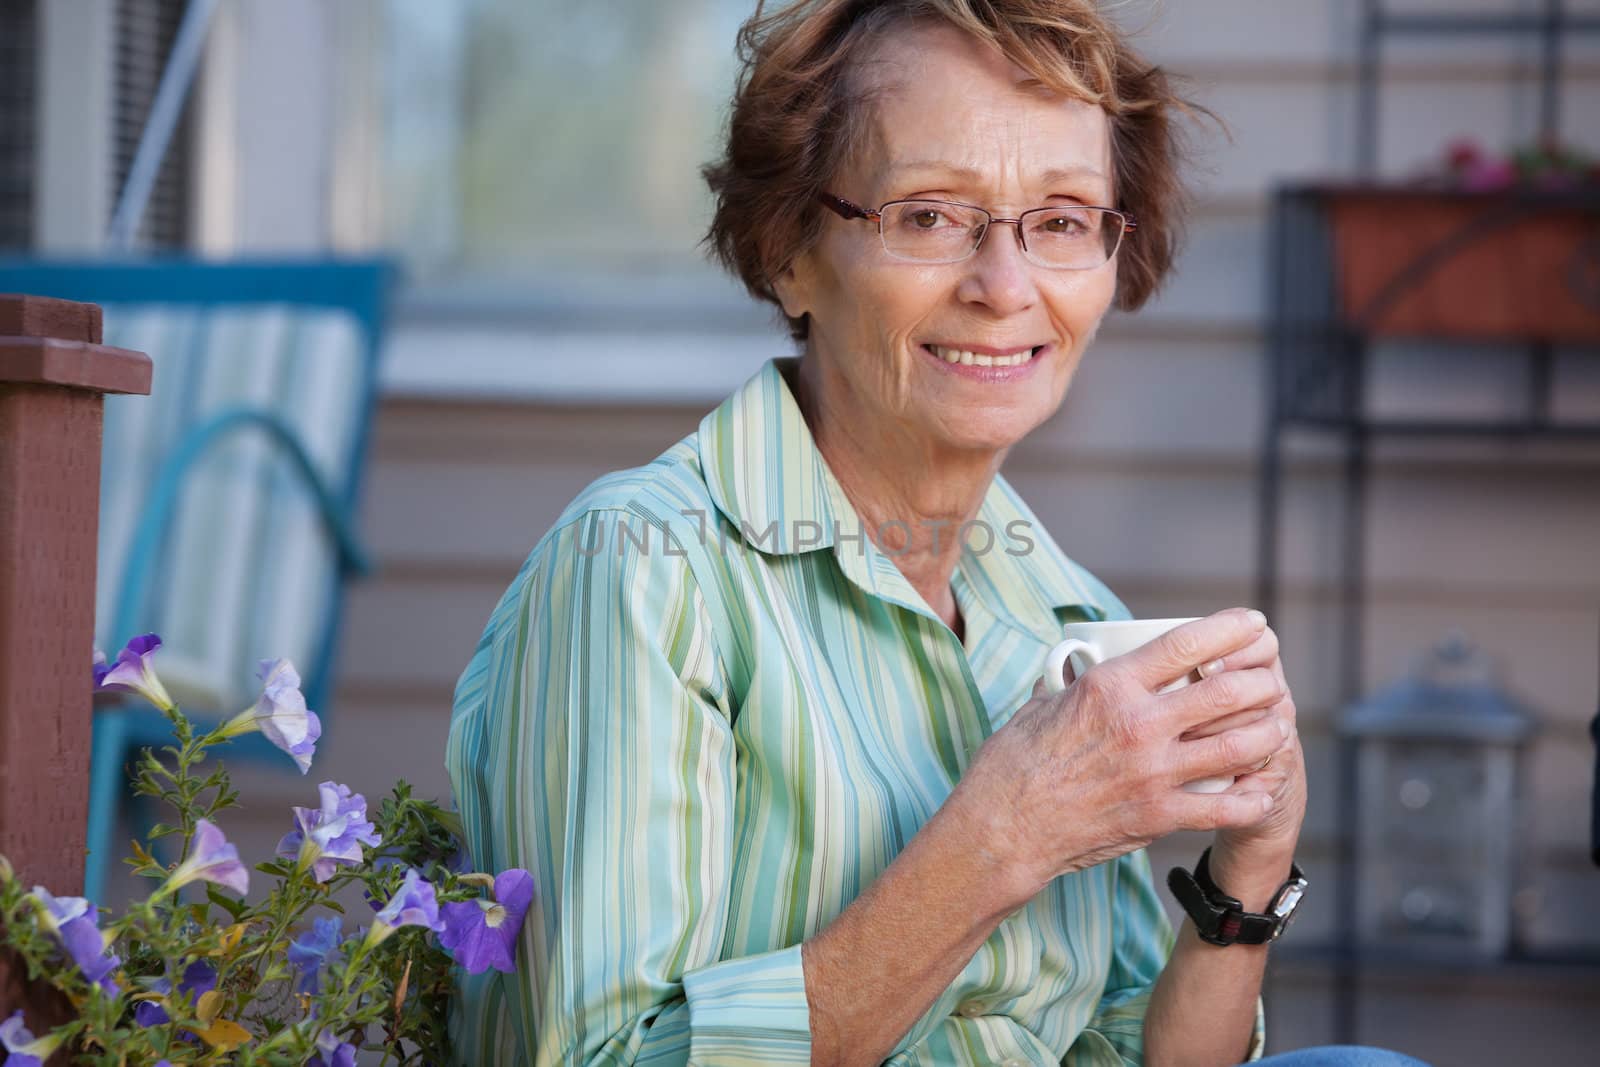 Portrait of smiling senior woman enjoying a warm drink